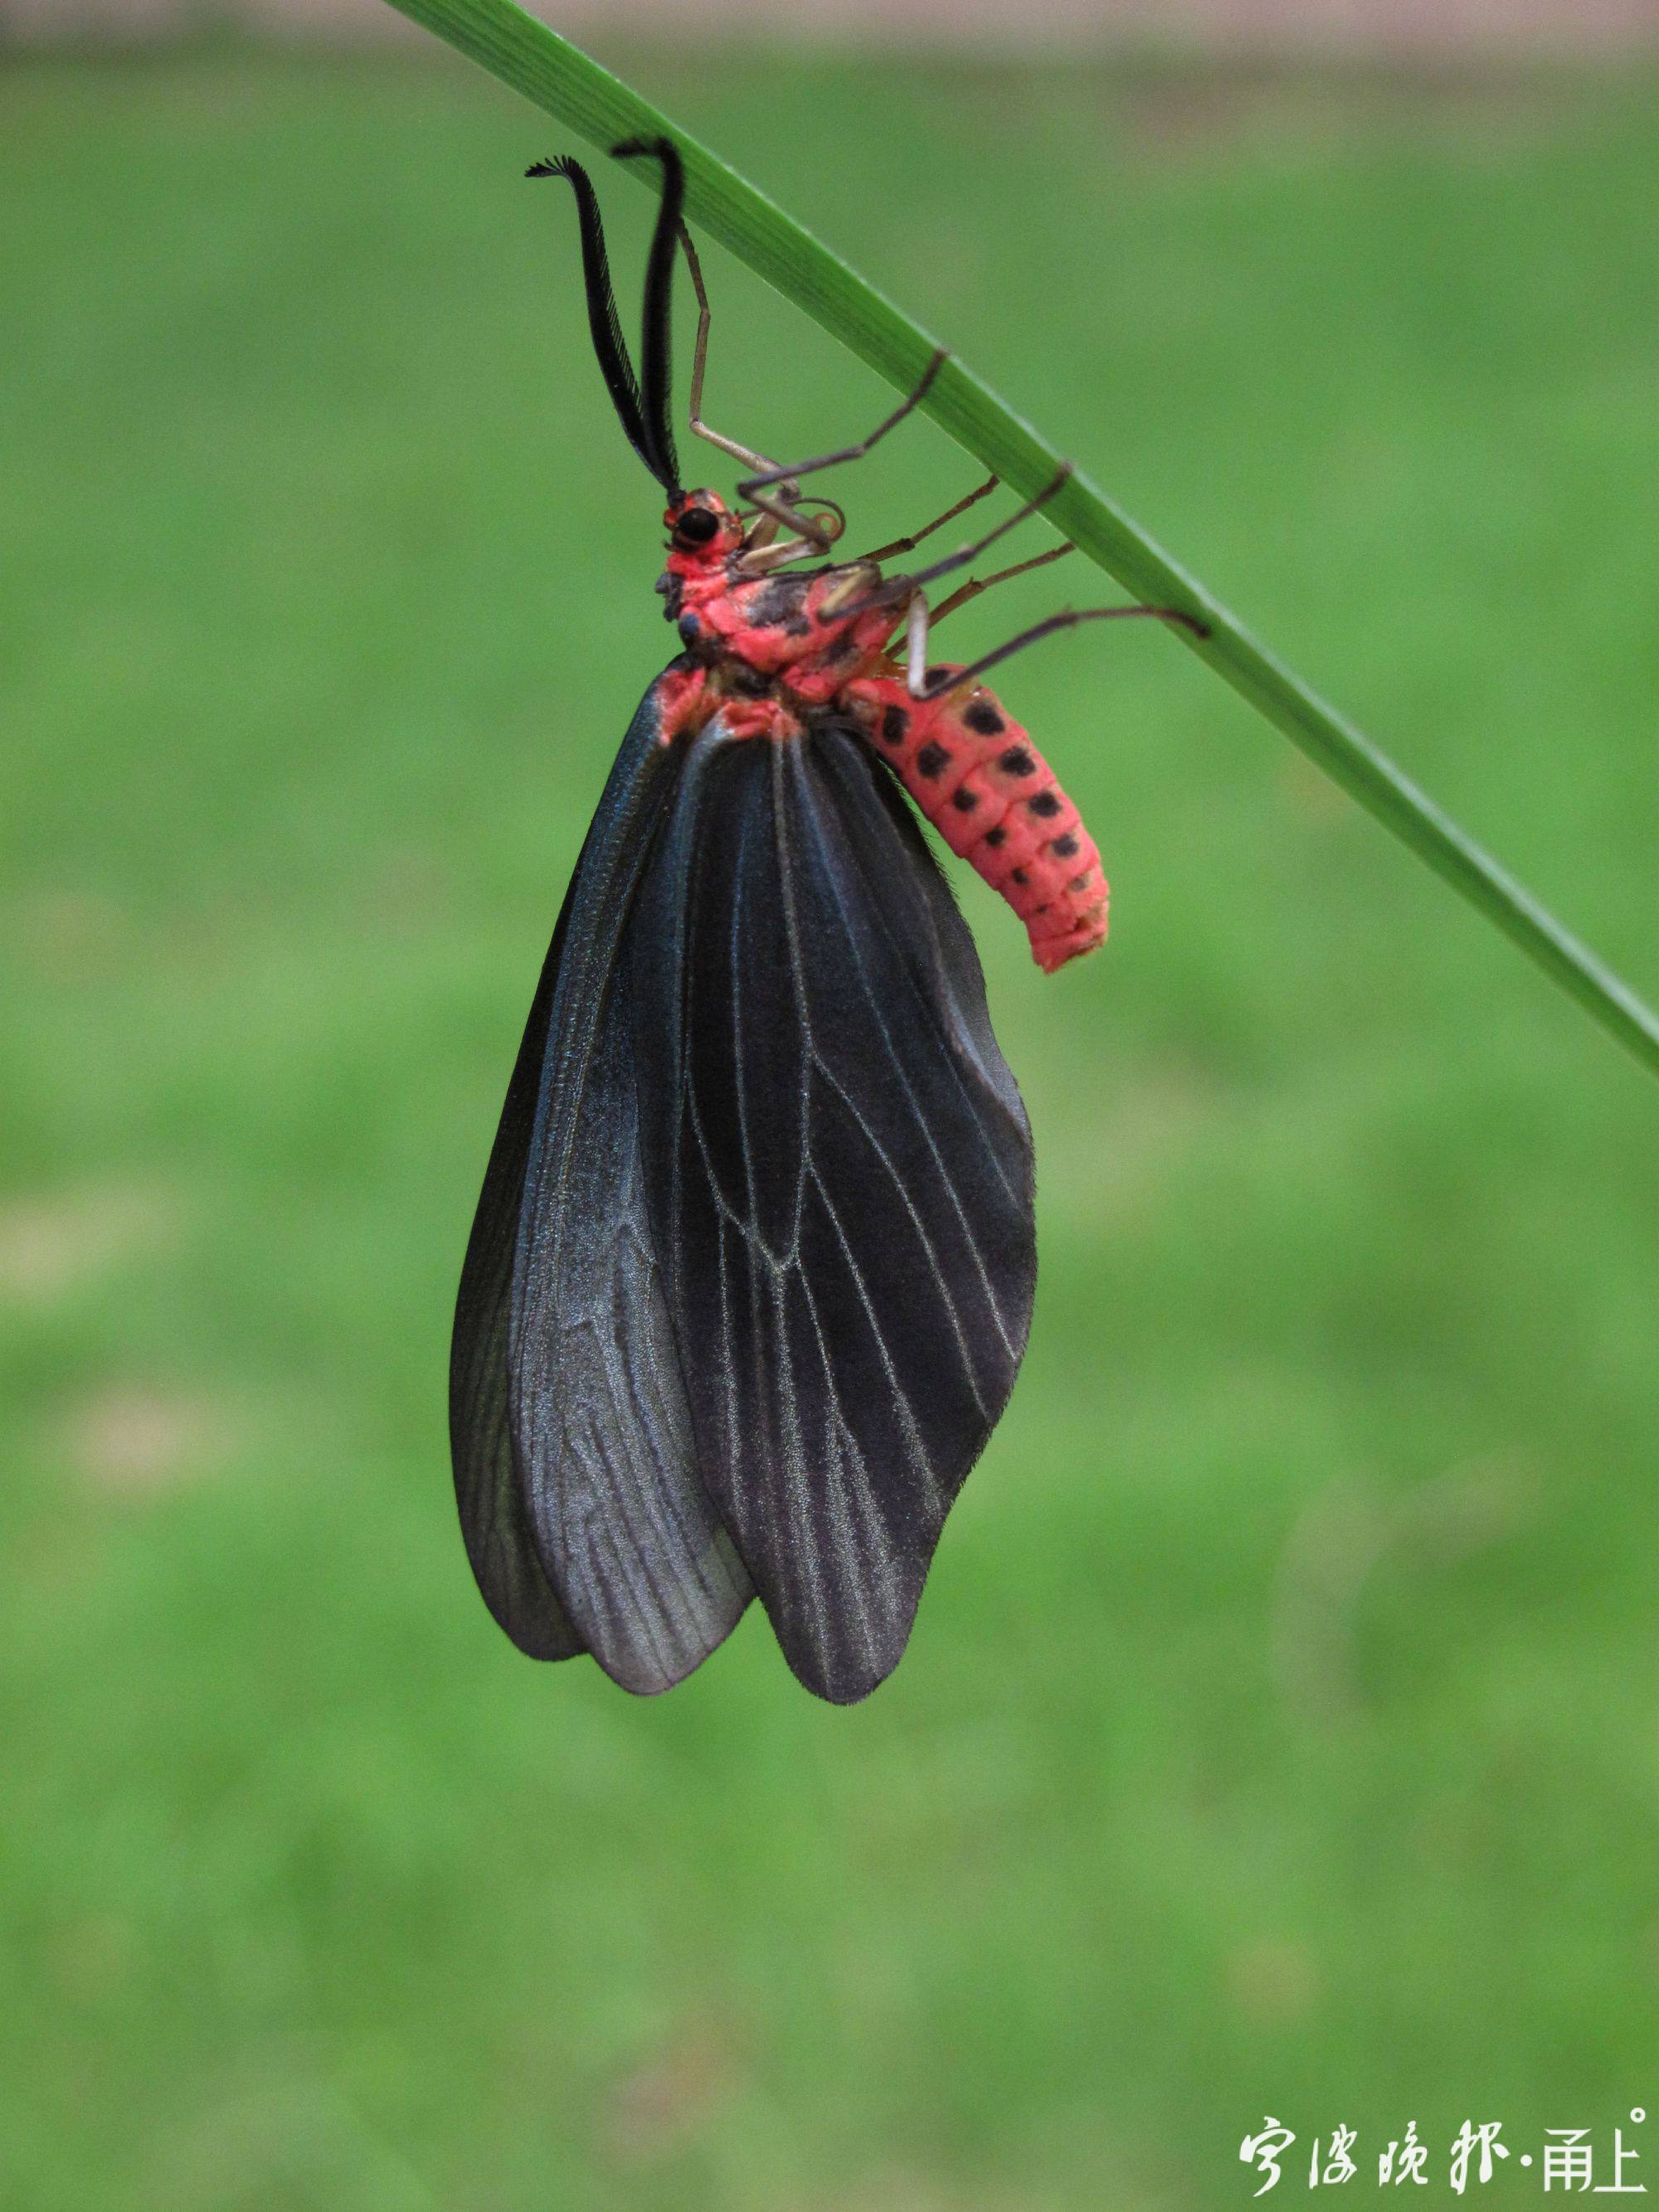 斑蛾(斑蛾科,身体鲜红色,翅翼全部为黑色,也是一种典型的警戒色蛾子